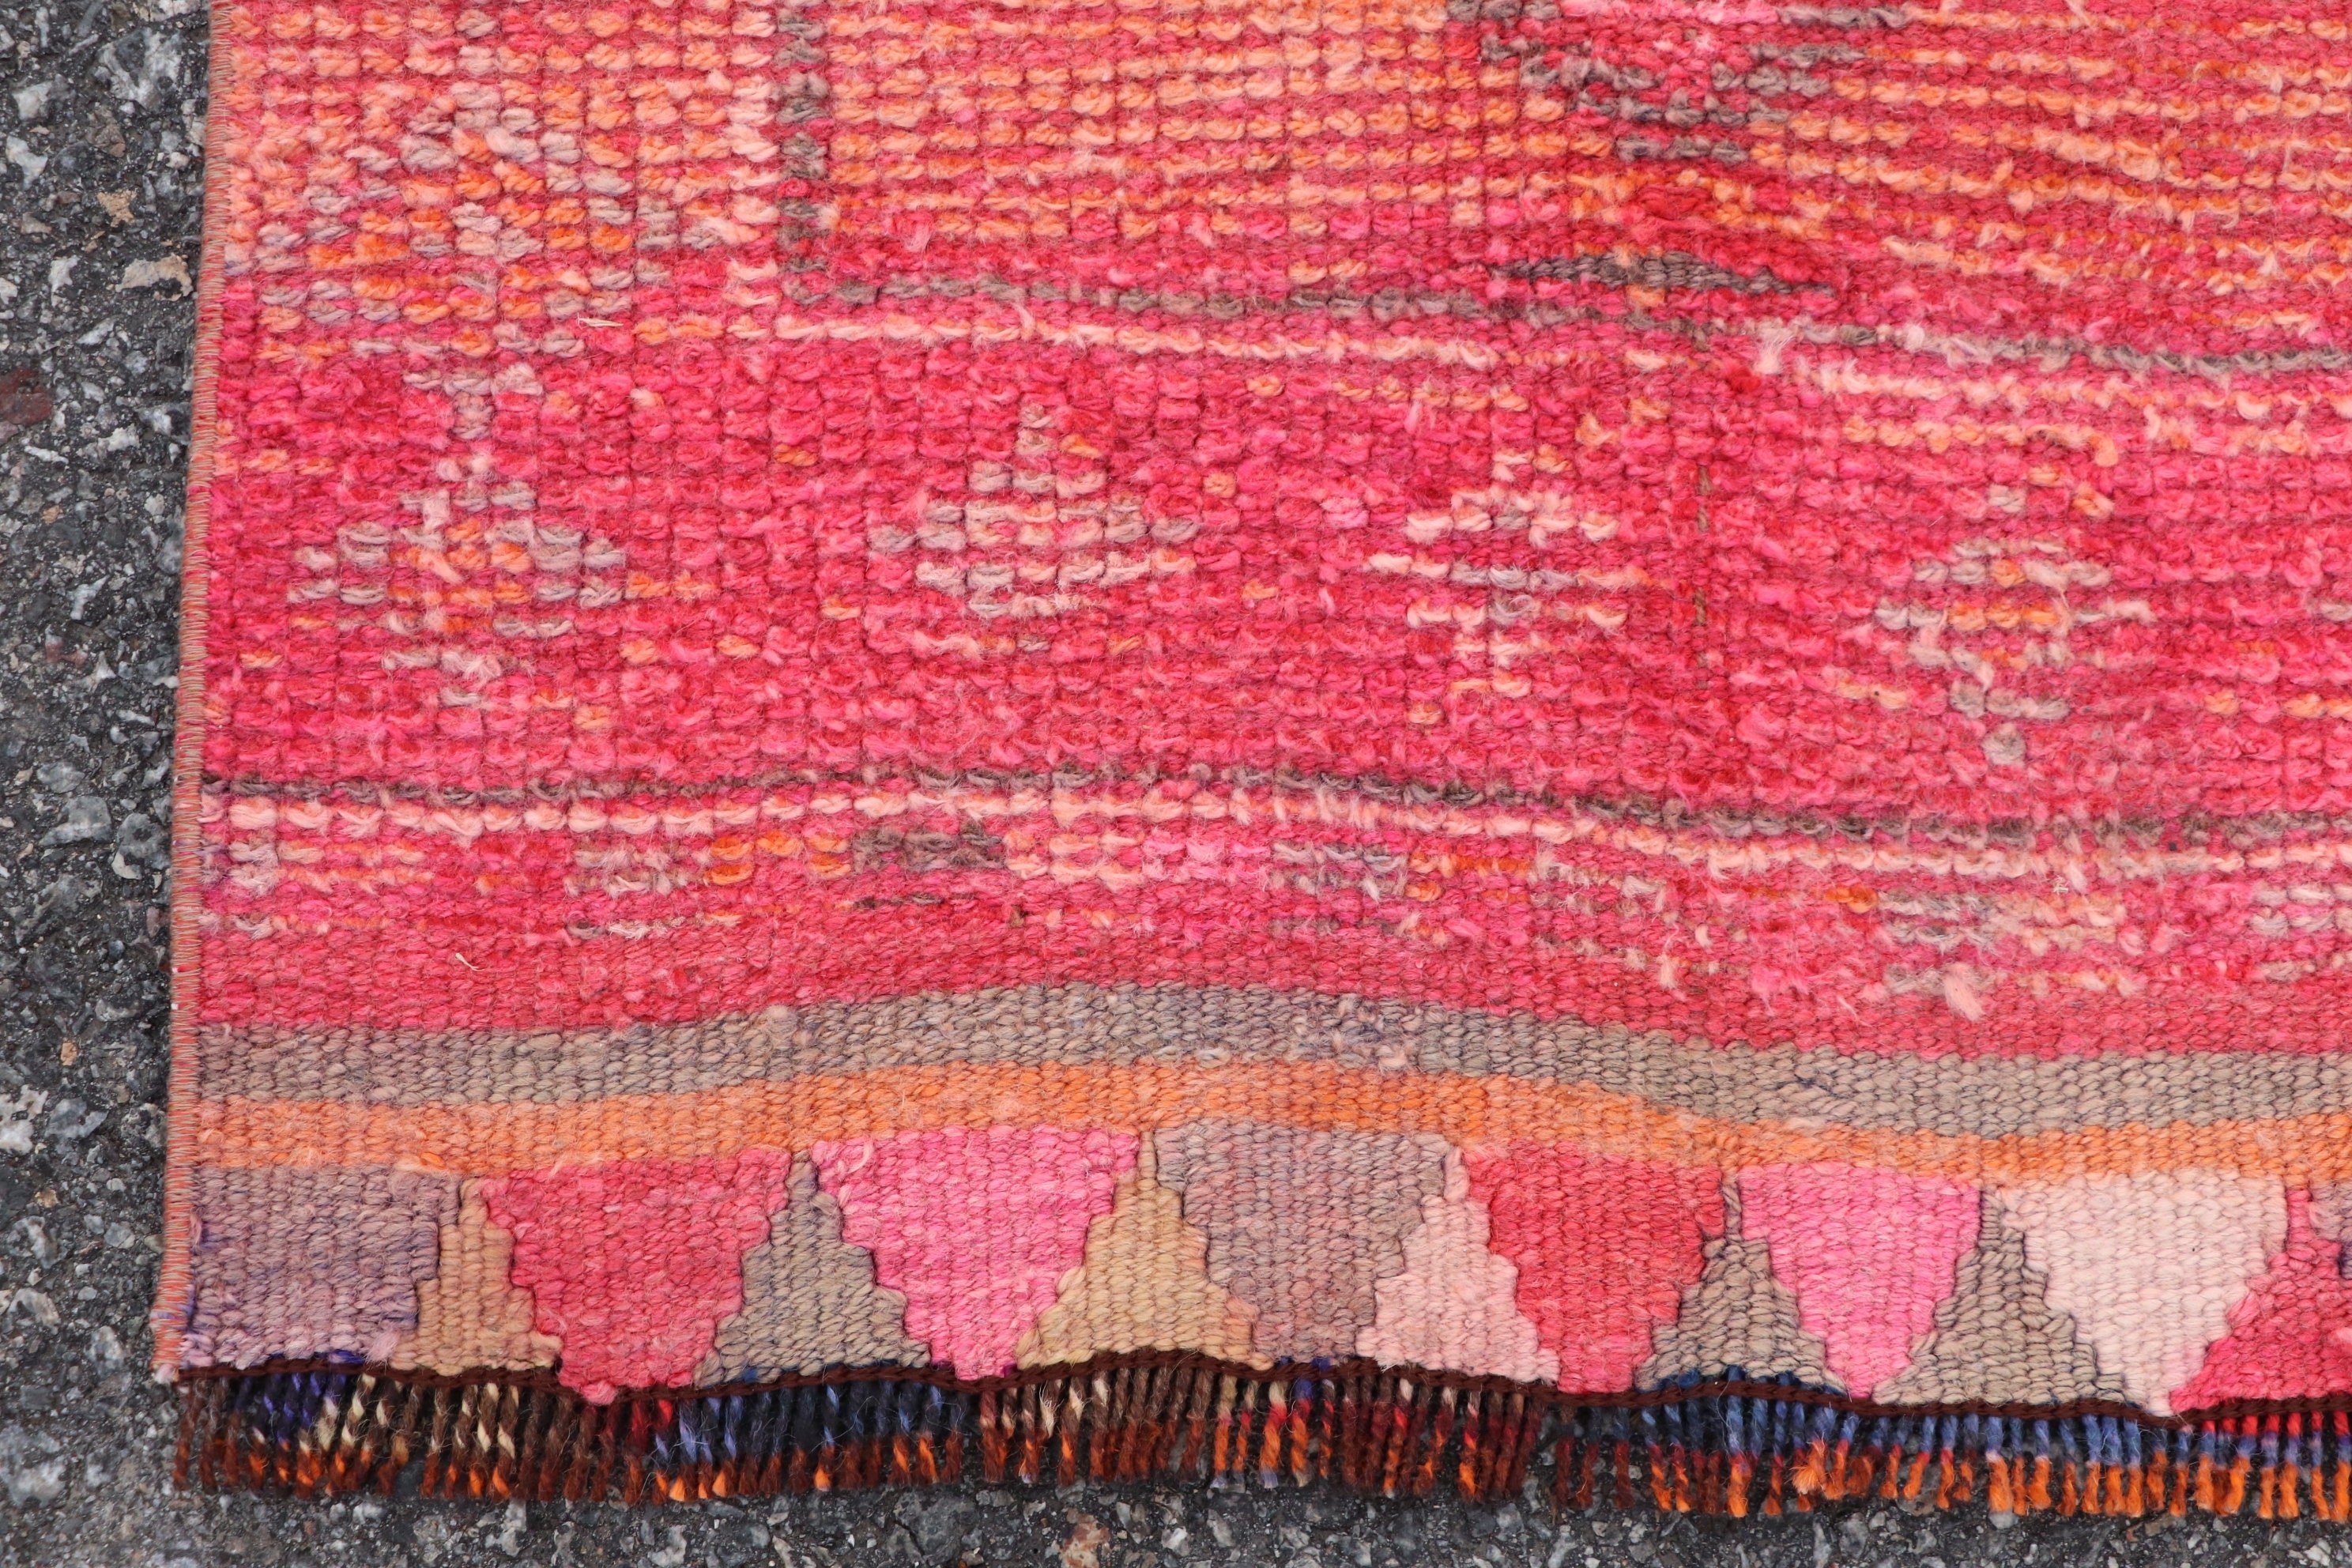 Vintage Rug, Antique Rug, Pink Oriental Rugs, 2.4x12.6 ft Runner Rugs, Stair Rug, Rugs for Kitchen, Corridor Rug, Wool Rug, Turkish Rug